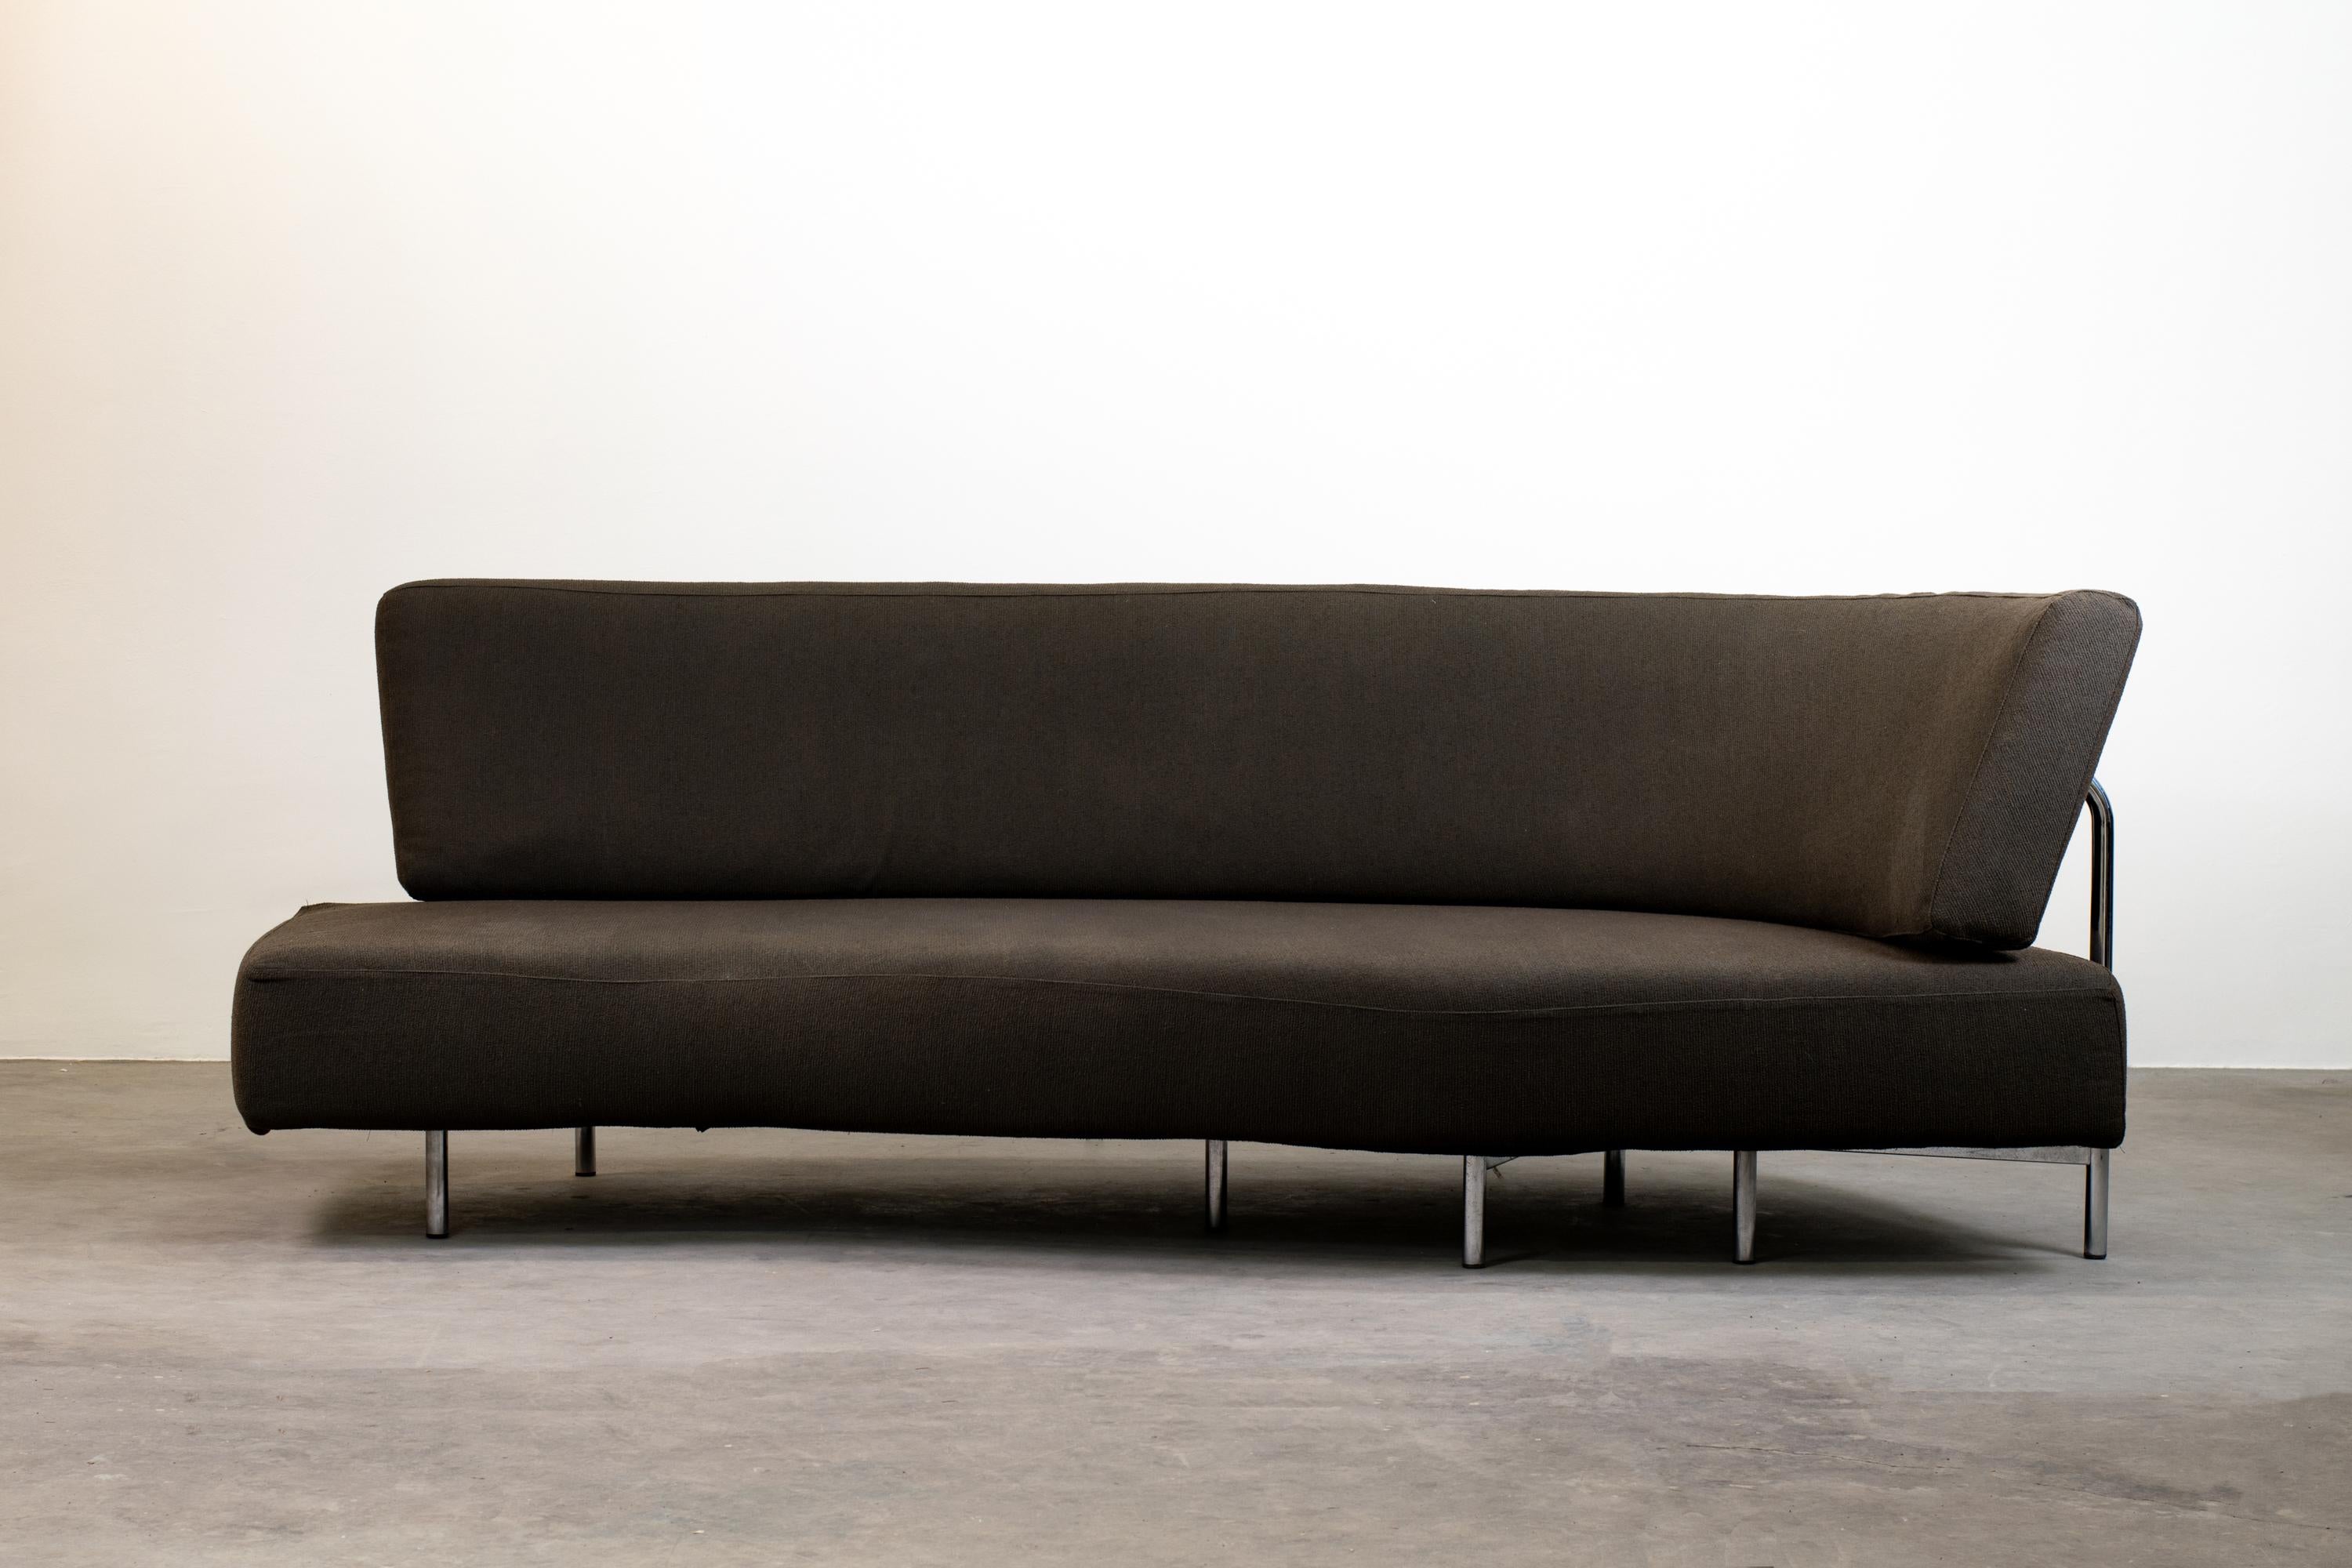 Sofa Shark, entworfen von Francesco Binafré für Edra.
Struktur aus Metall und Holz, verchromte Rückenlehne und Bodenstütze.
Pad aus Polyurethanschaum, bezogen mit dunkelbraunem Stoff (komplett abnehmbar).
    